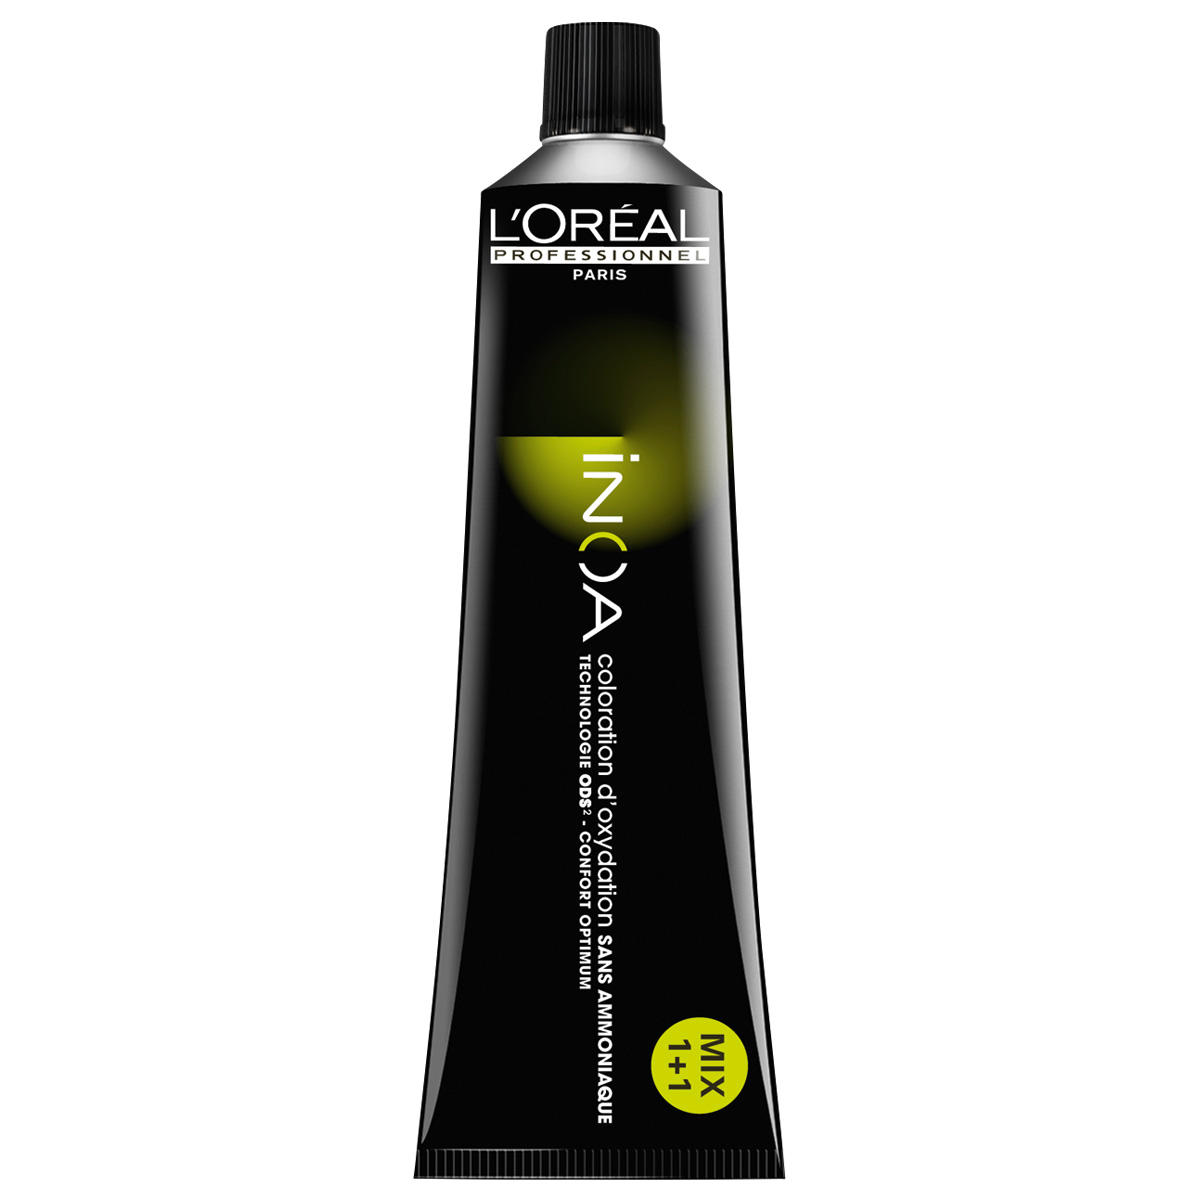 L'Oréal Professionnel Paris Coloration 4.8 Marrone medio moka, tubo 60 ml